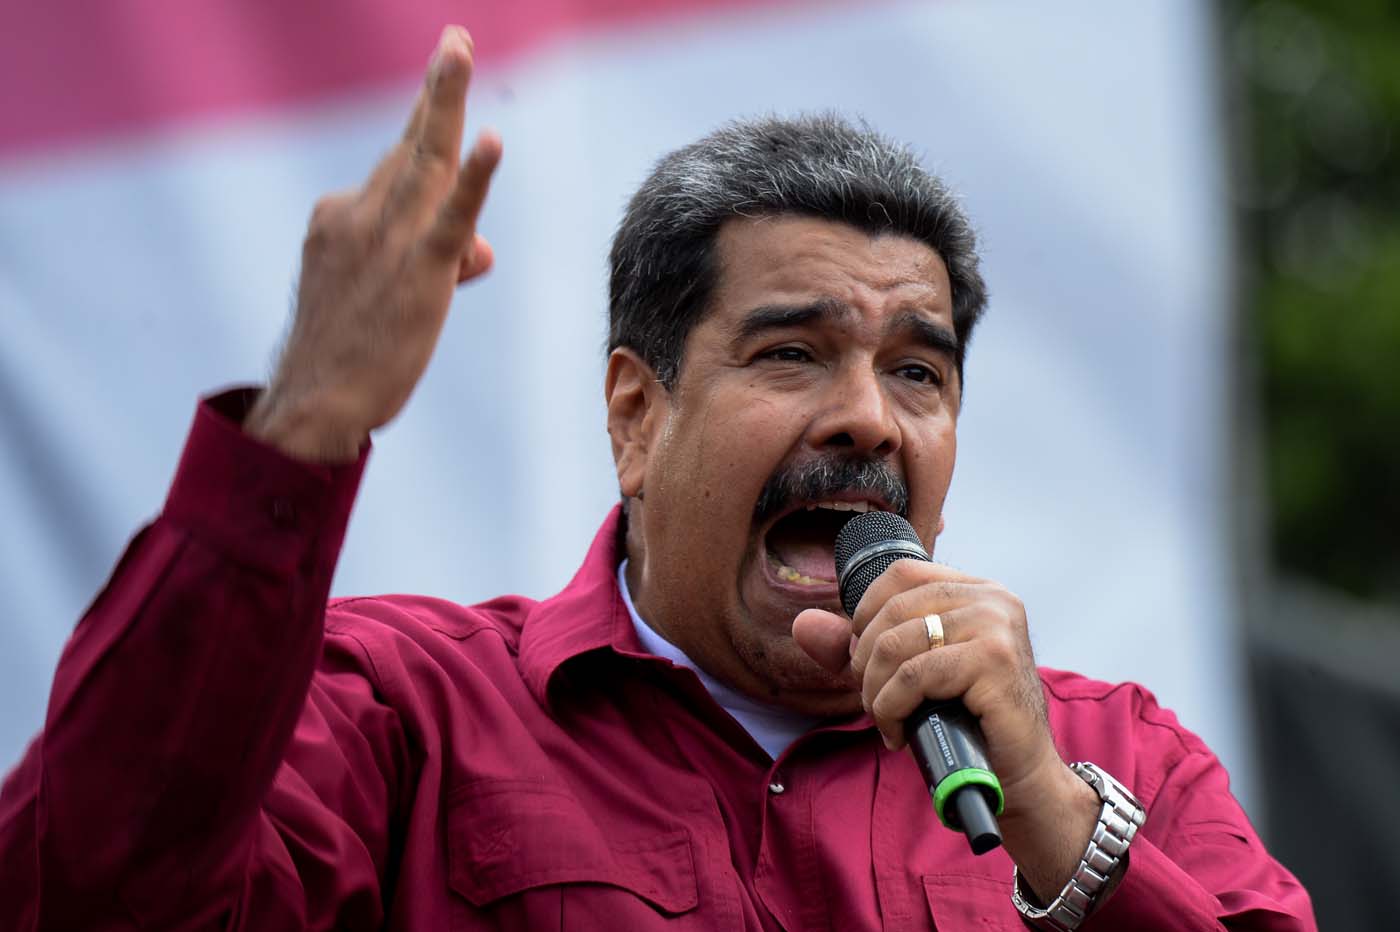 Nicolás “psíquico” Maduro se dice ganador del proceso del #20M